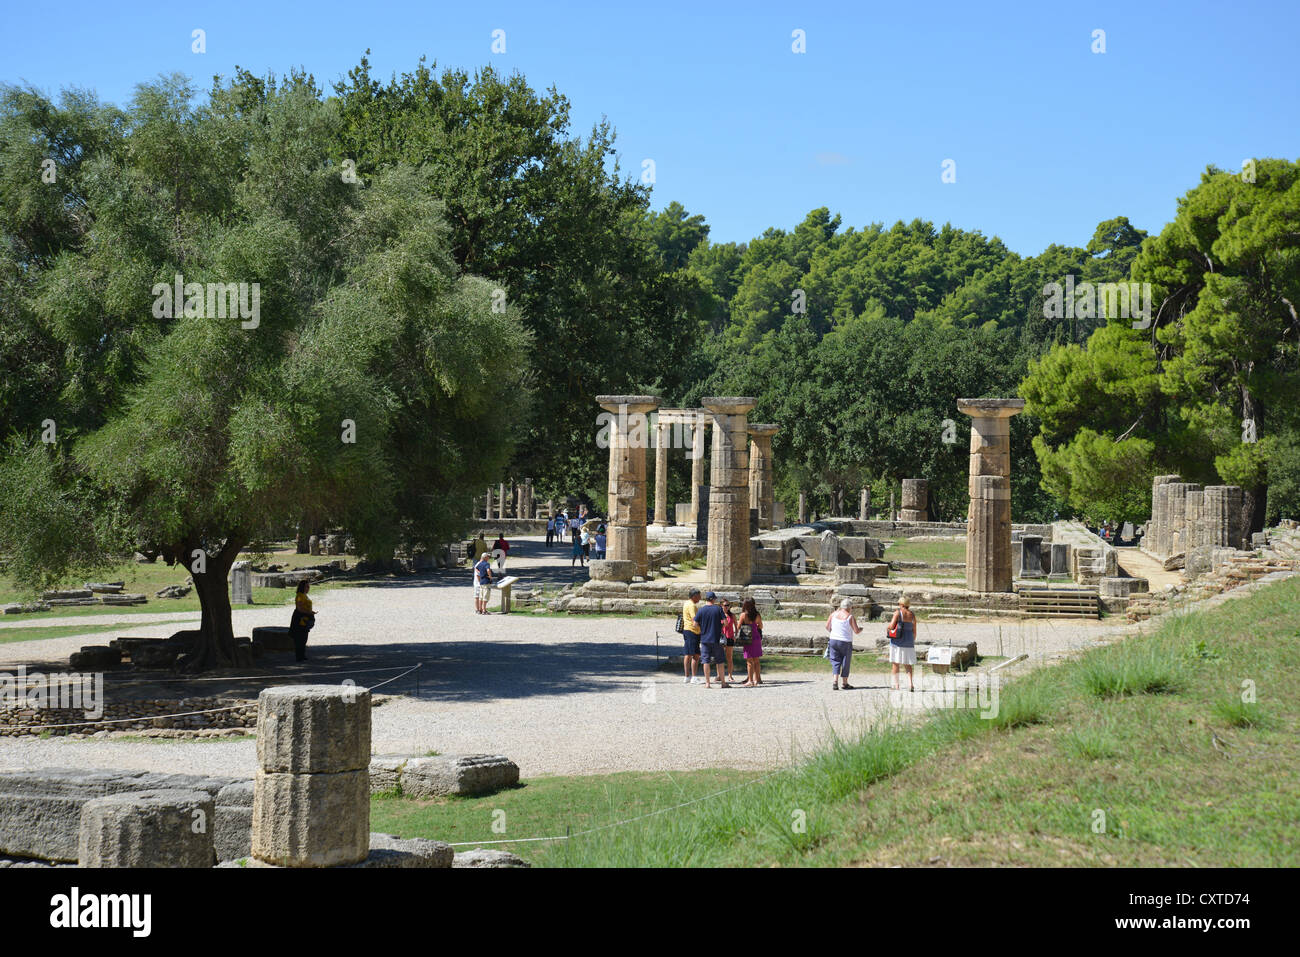 Hera Altare e Tempio di Hera, Antica Olympia, Elis, Grecia occidentale Regione, Grecia Foto Stock